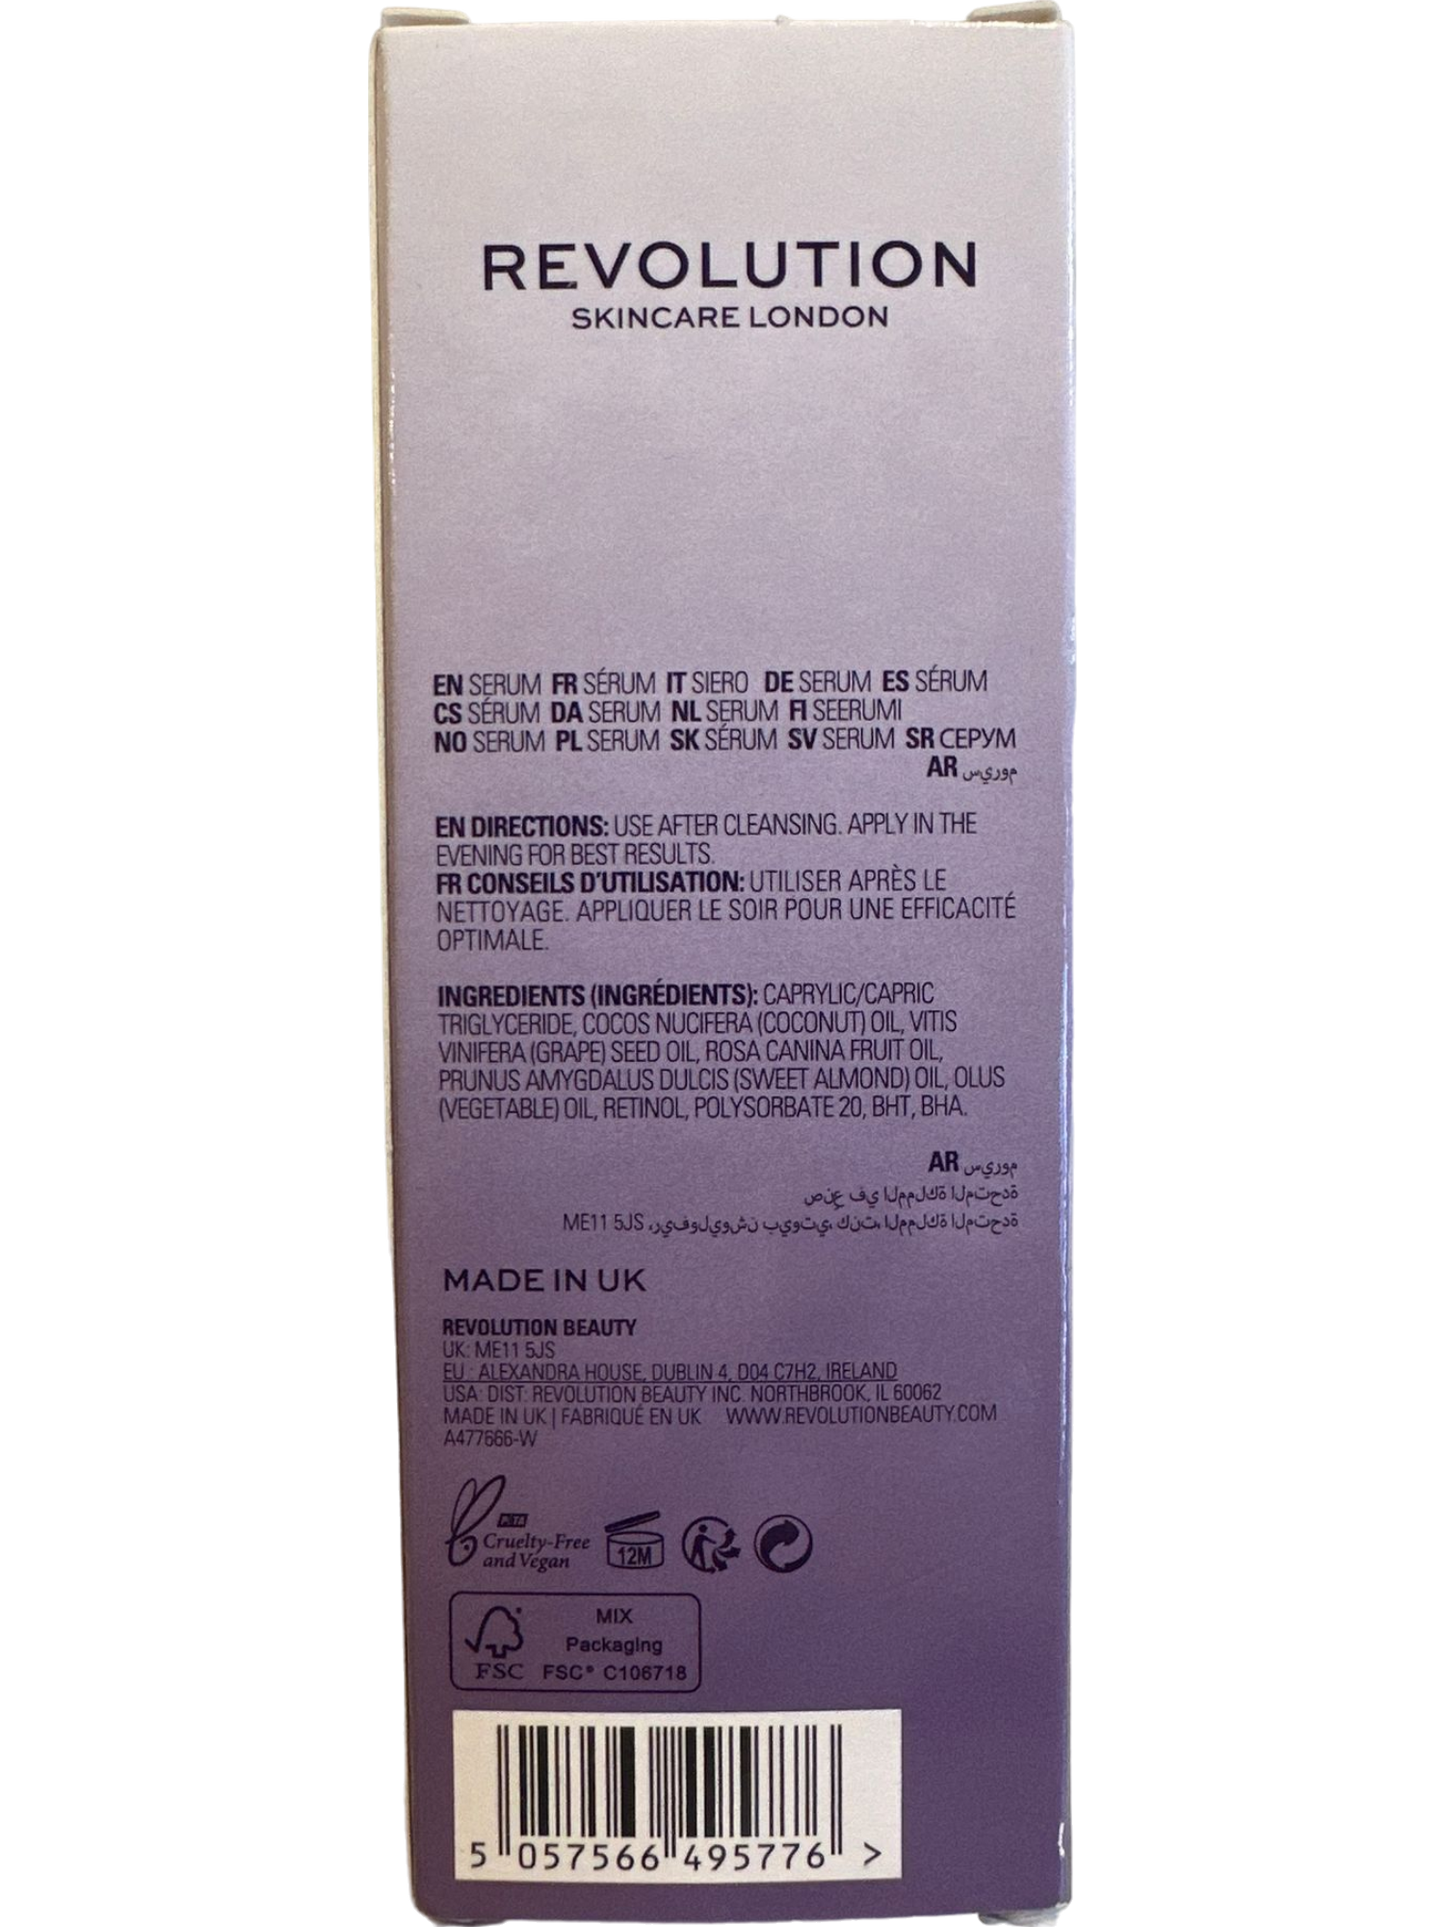 Revolution Skincare Retinol 0.5% Intense Anti-Wrinkle Serum 30 Ml